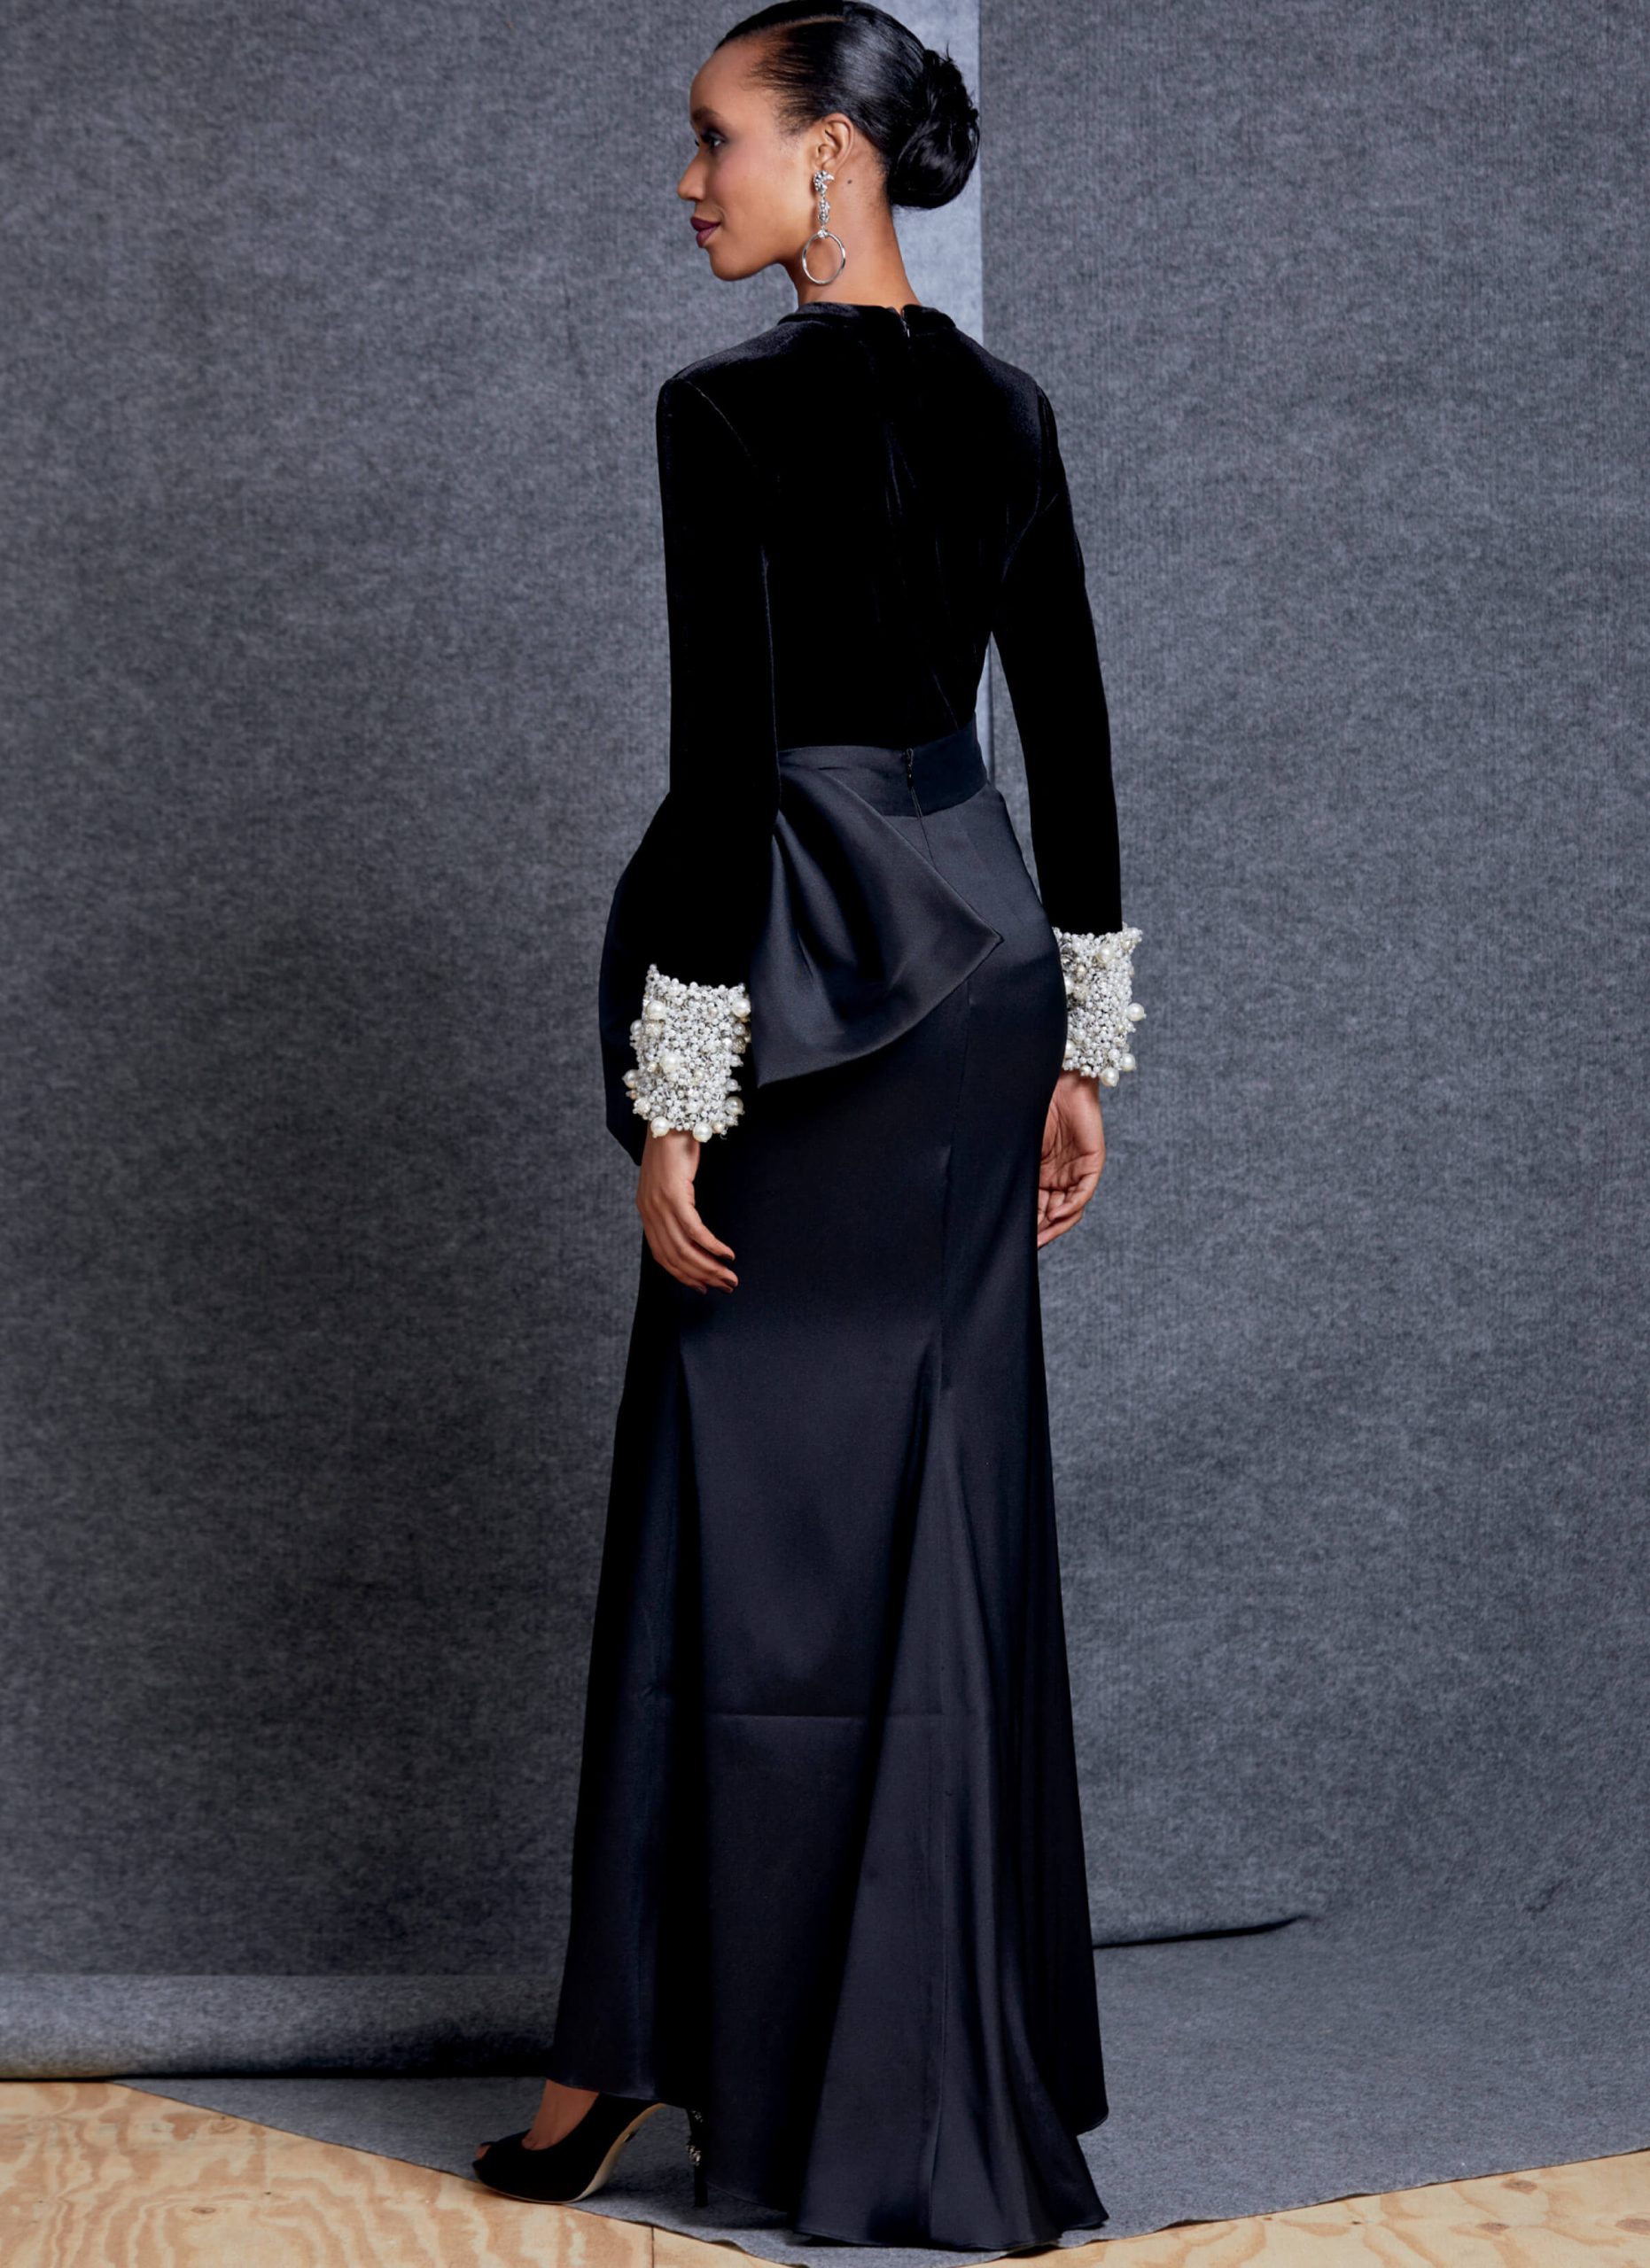 Vogue Patterns V1605 Misses' Top and Skirt